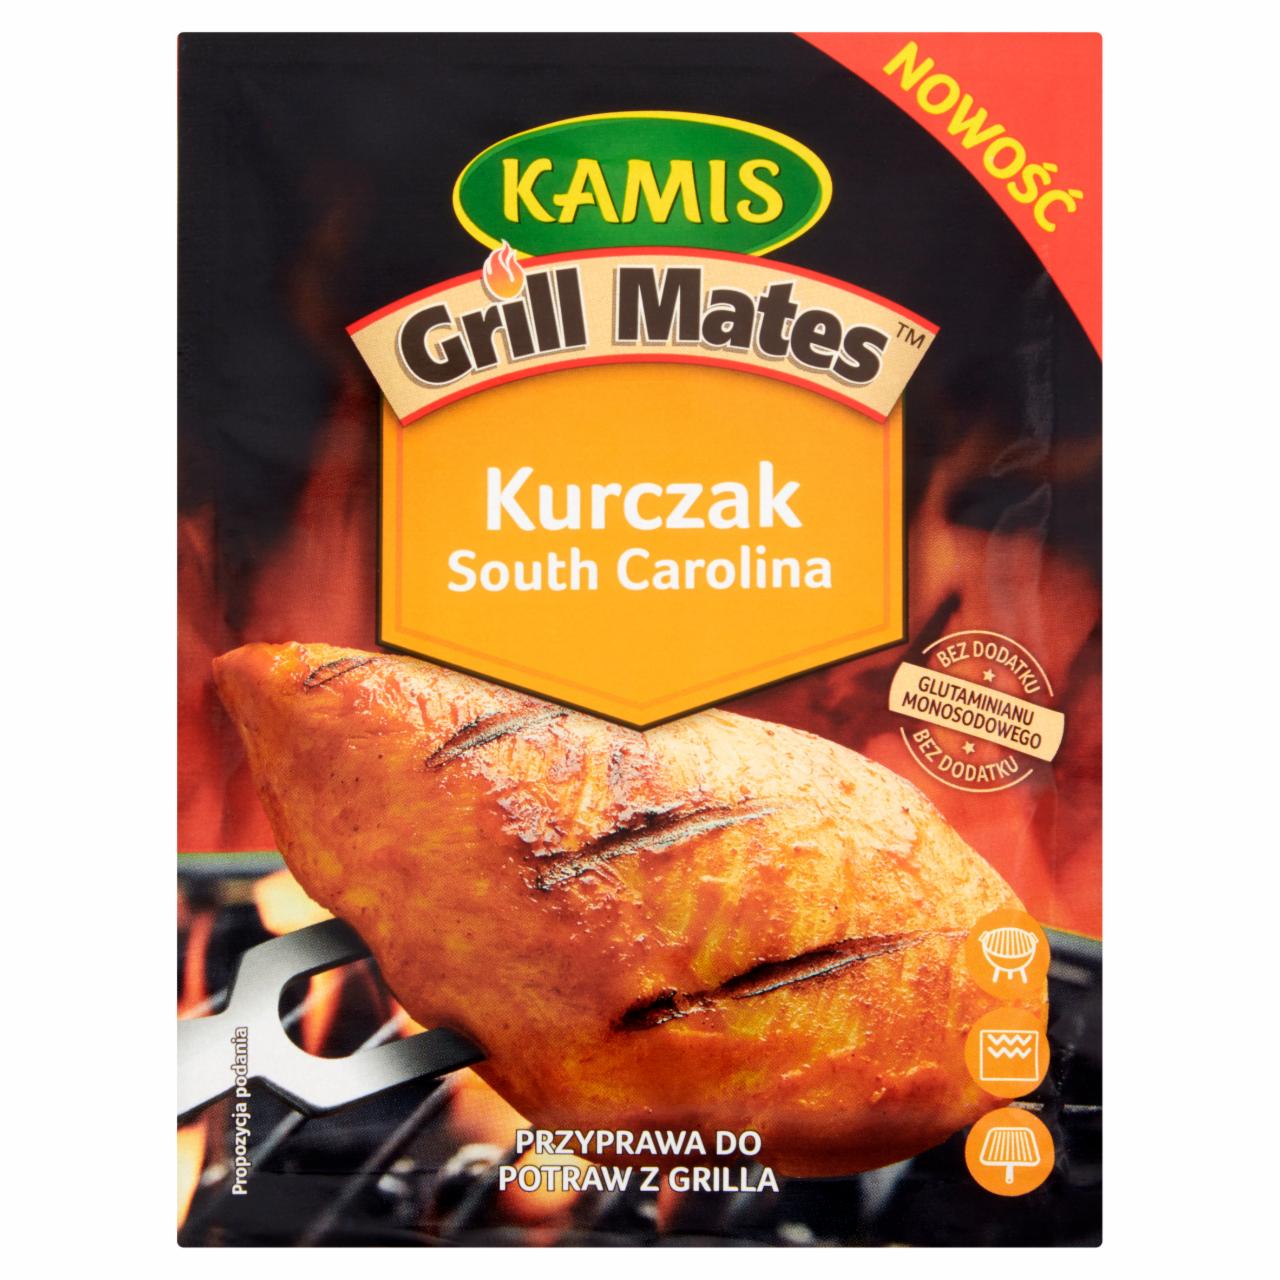 Zdjęcia - Kamis Grill Mates Kurczak South Carolina Przyprawa do potraw z grilla 20 g